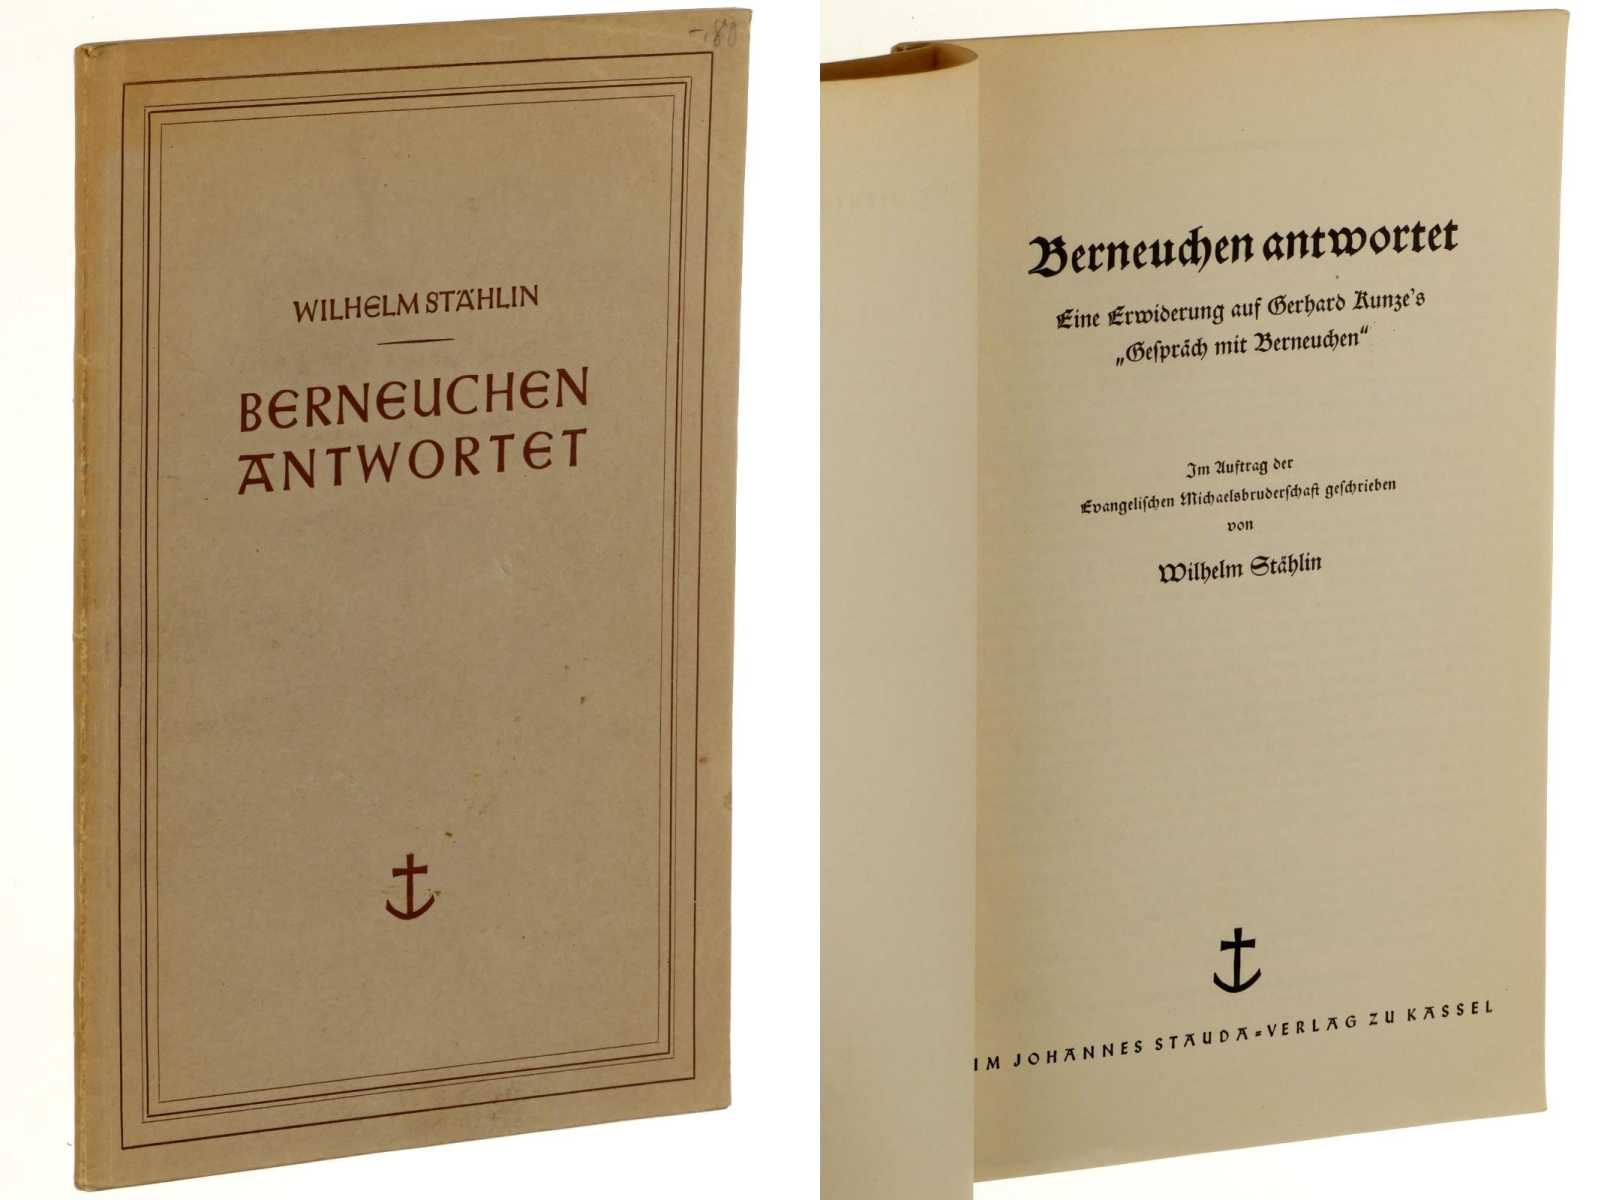 Stählin, Wilhelm:  Berneuchen antwortet. Eine Erwiderung auf Gerhard Kunze's "Gespräch mit Berneuchen". 